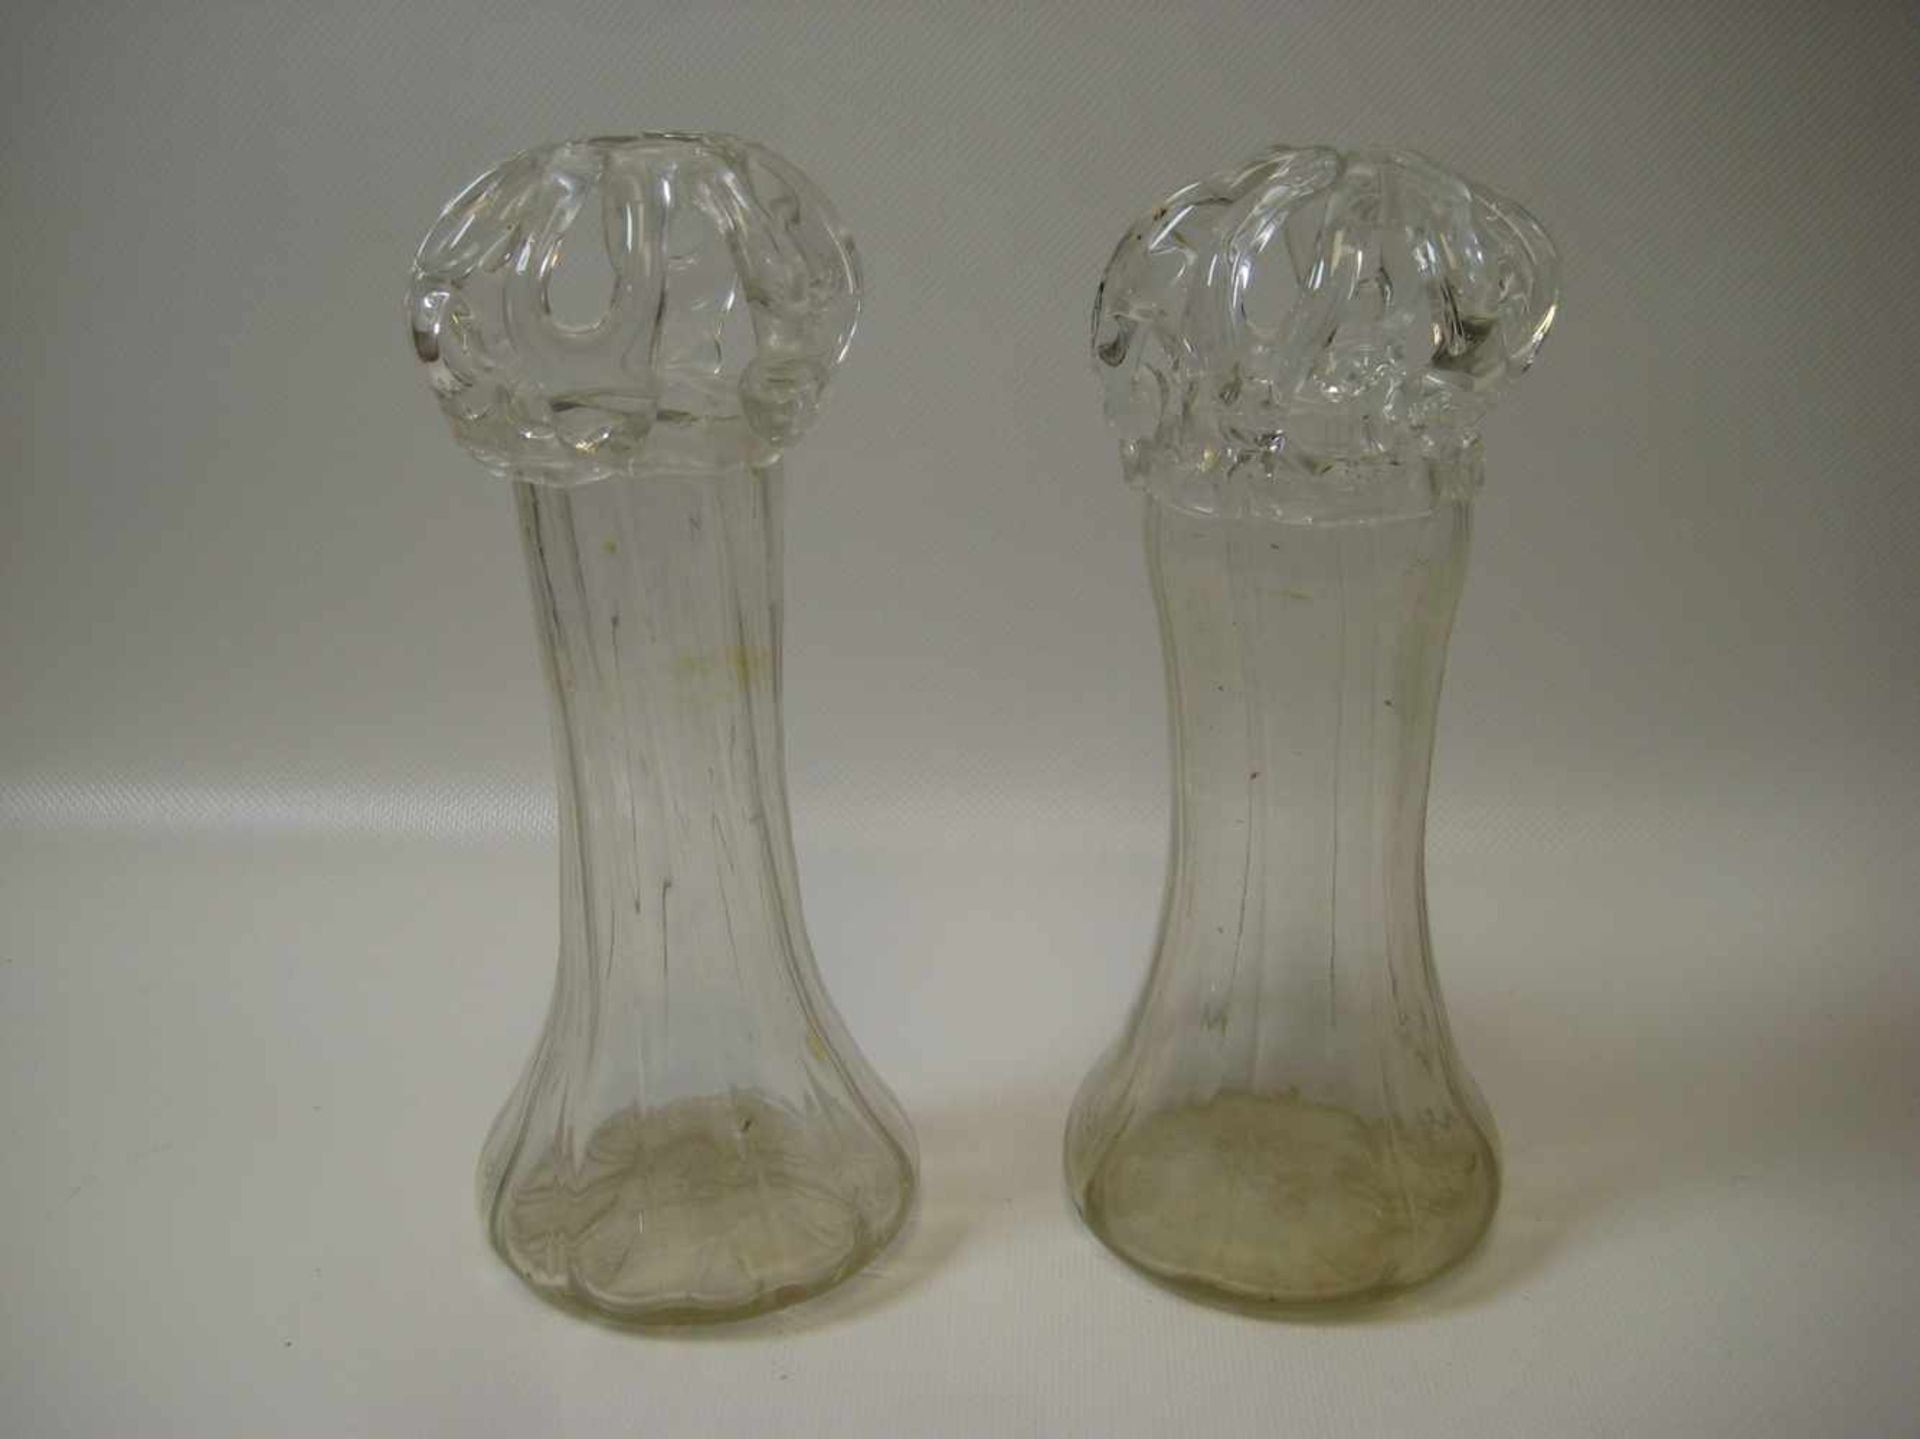 2 antike Vasen, 18./19. Jahrhundert, farbloses Glas, h 20,5 cm, d 8,5 cm.- - -19.00 % buyer's